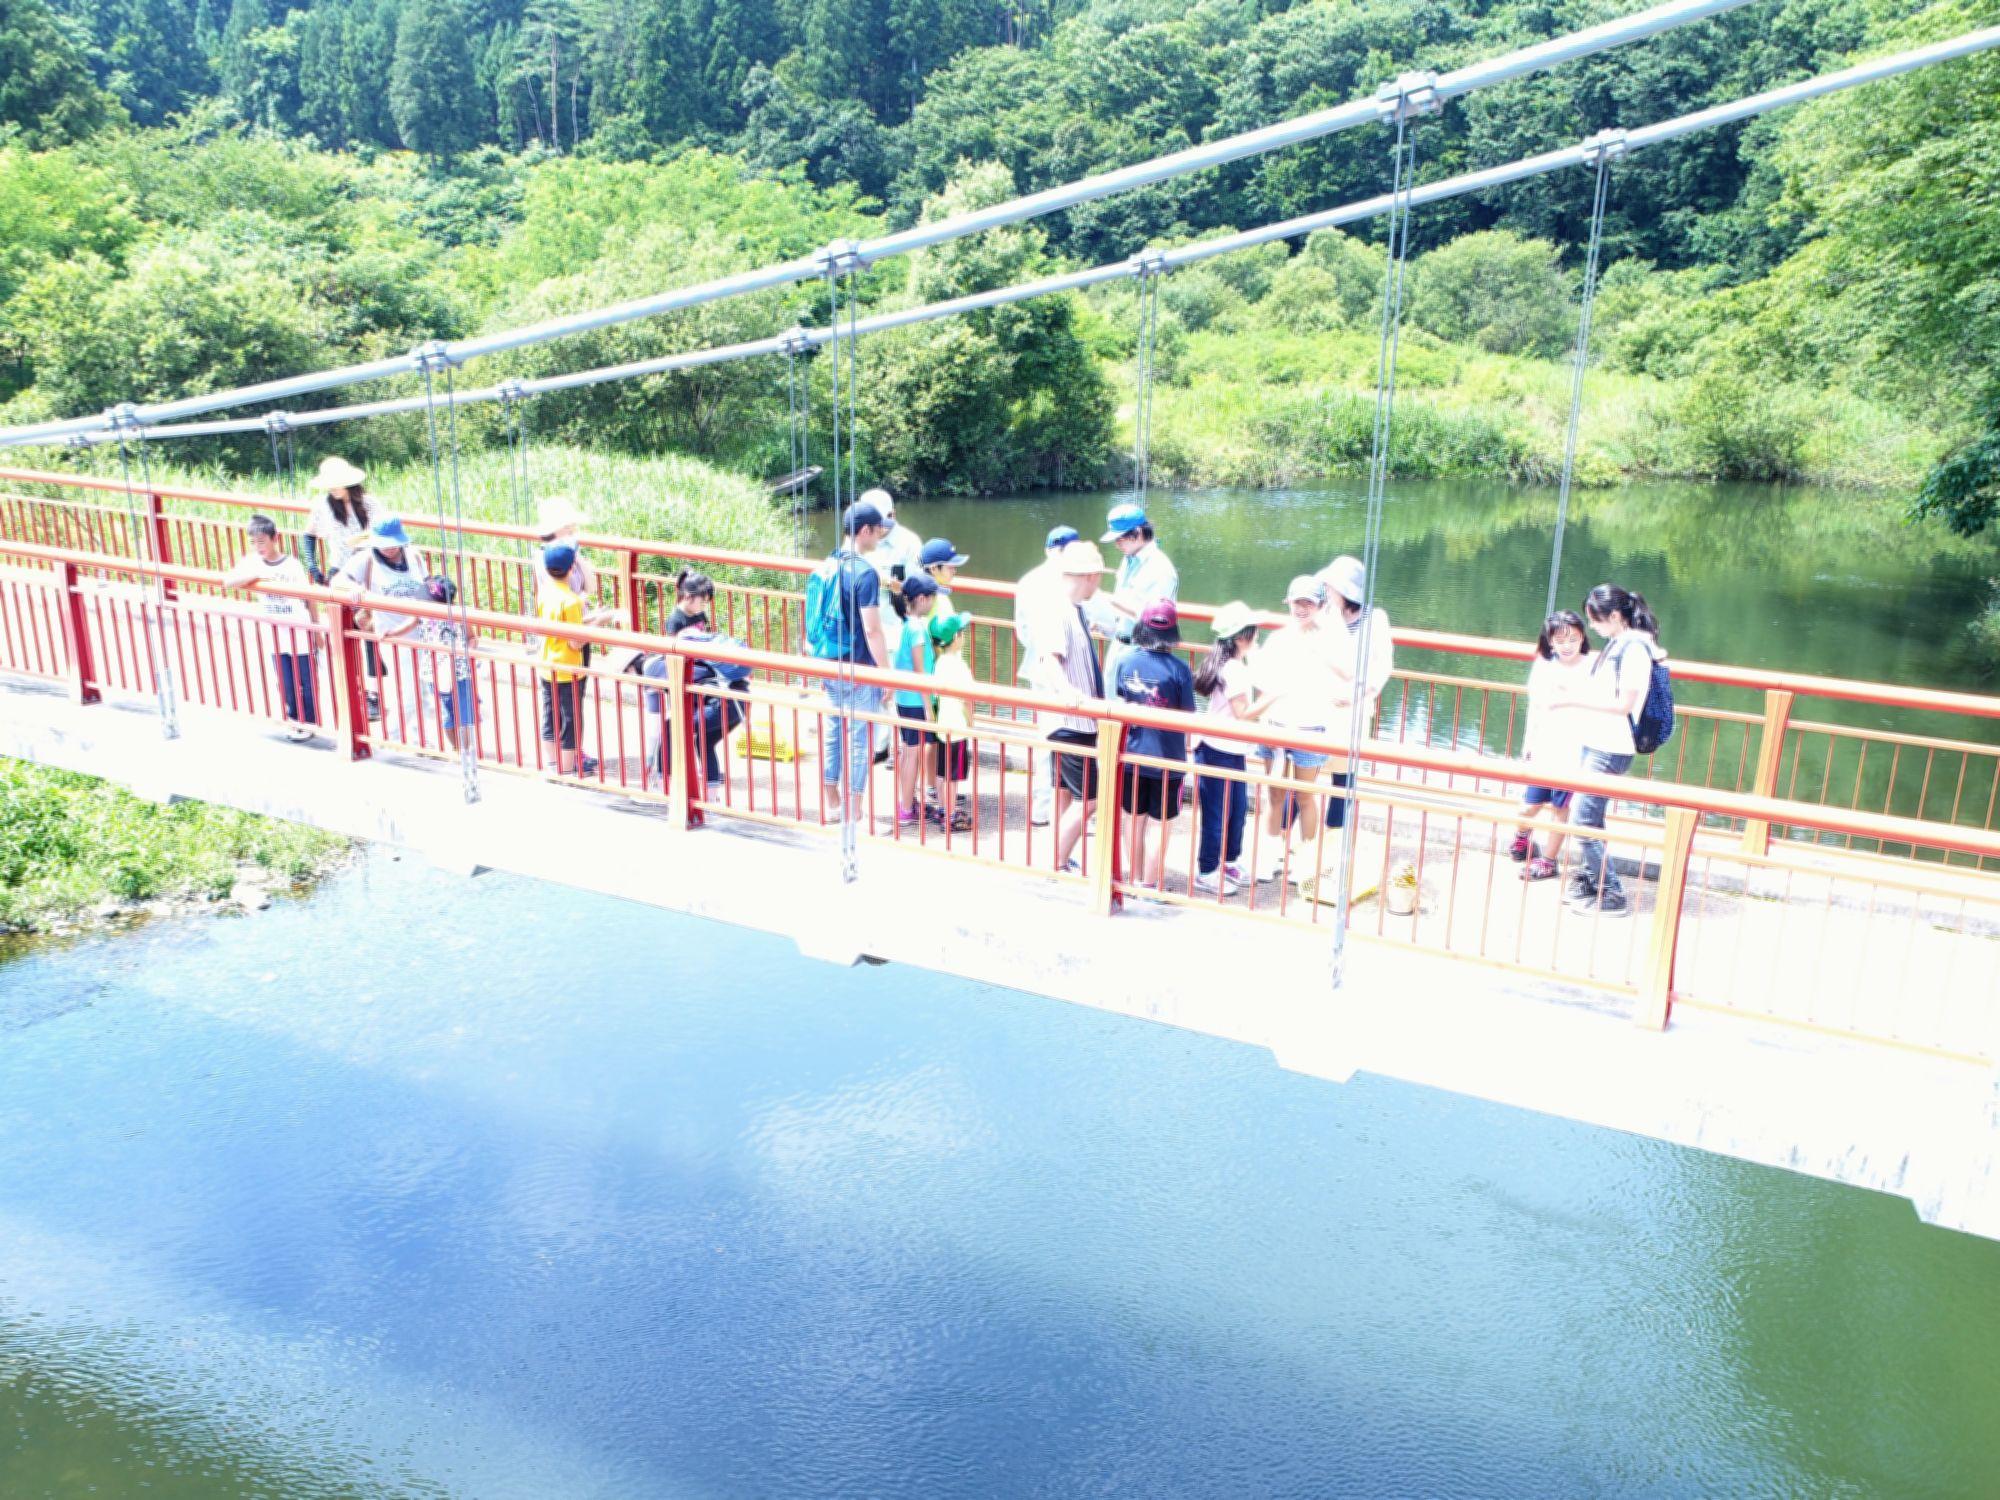 緑の木々の間を流れている川の上にかかった橋を渡っている参加者たちの様子の写真